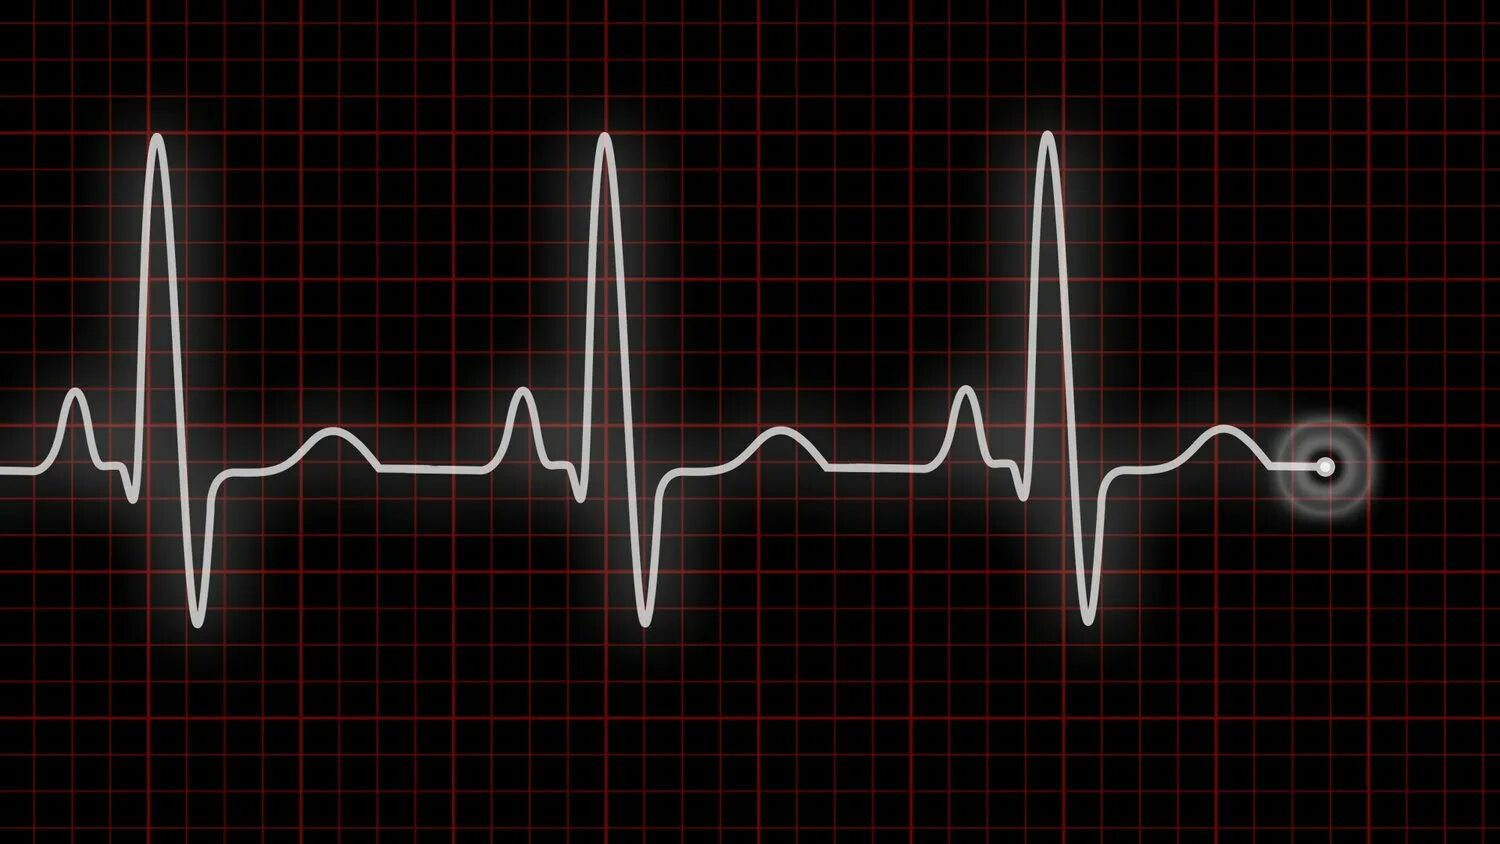 Усилилось сердцебиение. Пульс на ЭКГ. Сердцебиение кардиограмма. Пульсация сердца. ЭКГ на черном фоне.